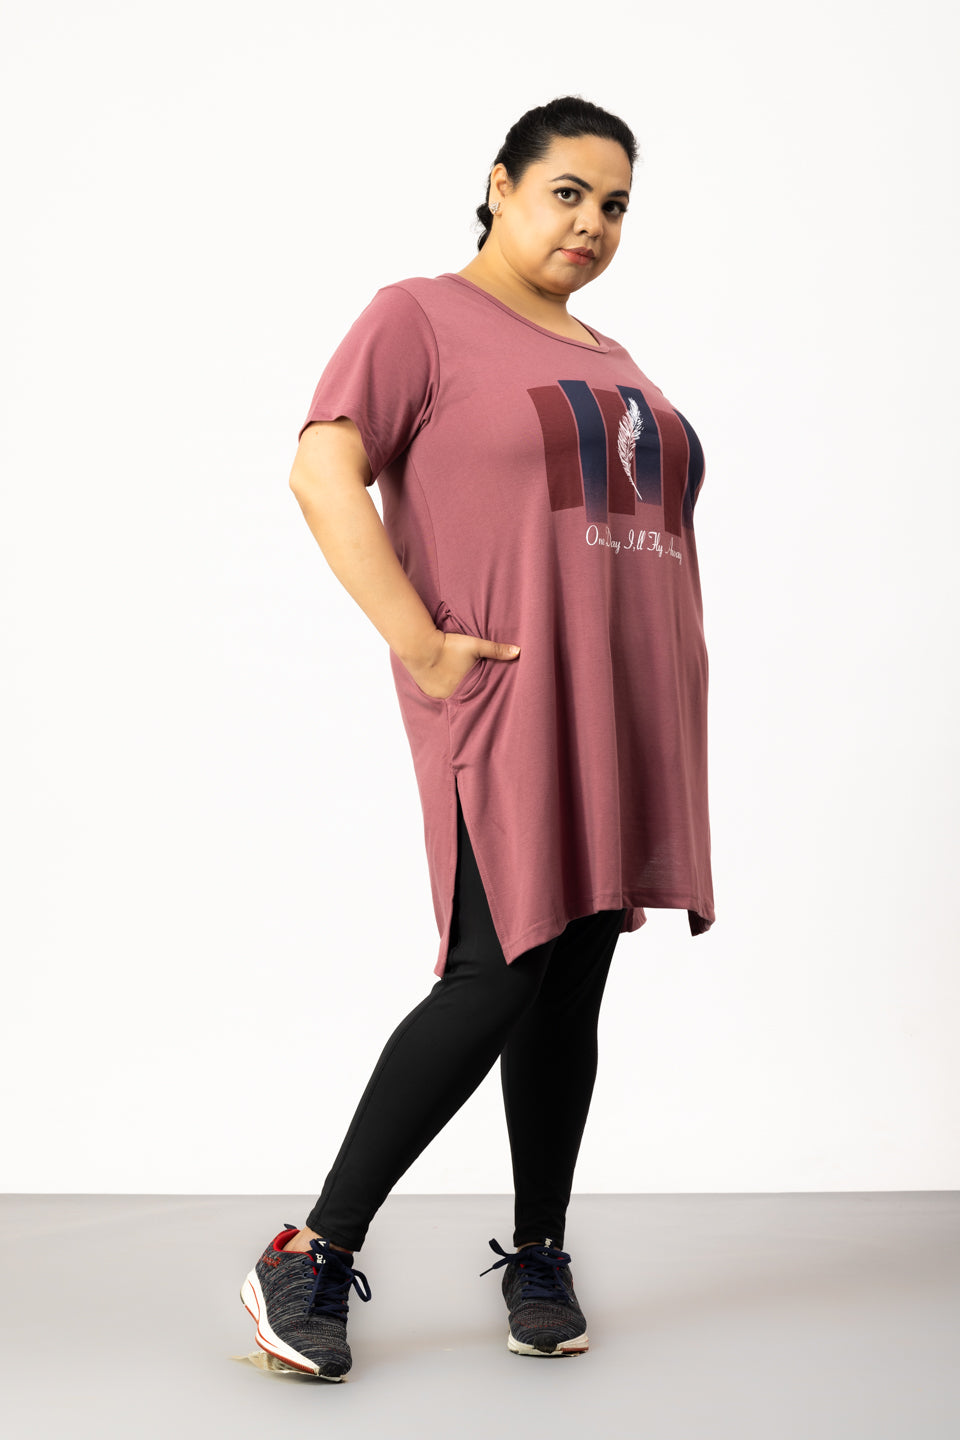 Plus Size Long T-shirt For Women - Half Sleeve - Mauve